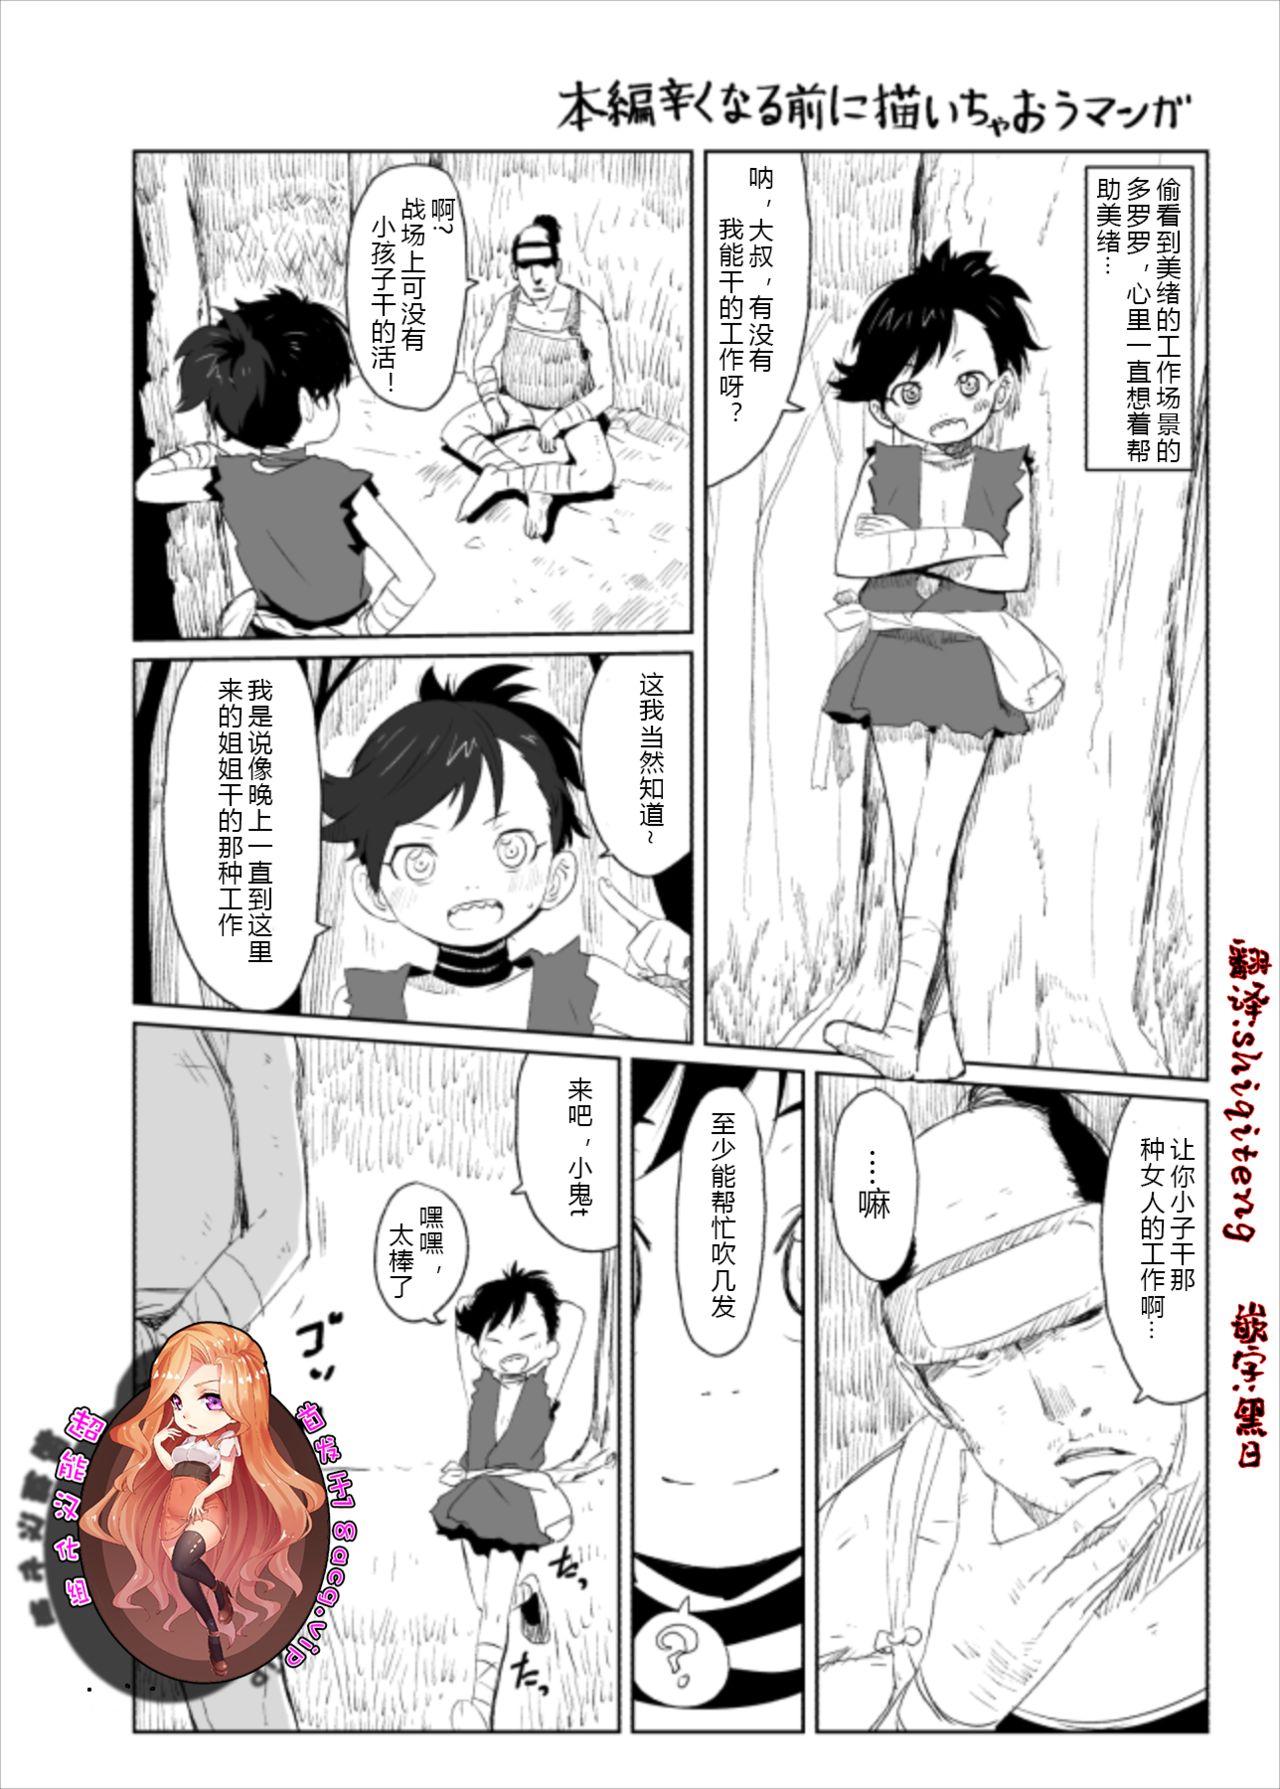 Dororo Rakugaki Echi Manga 0